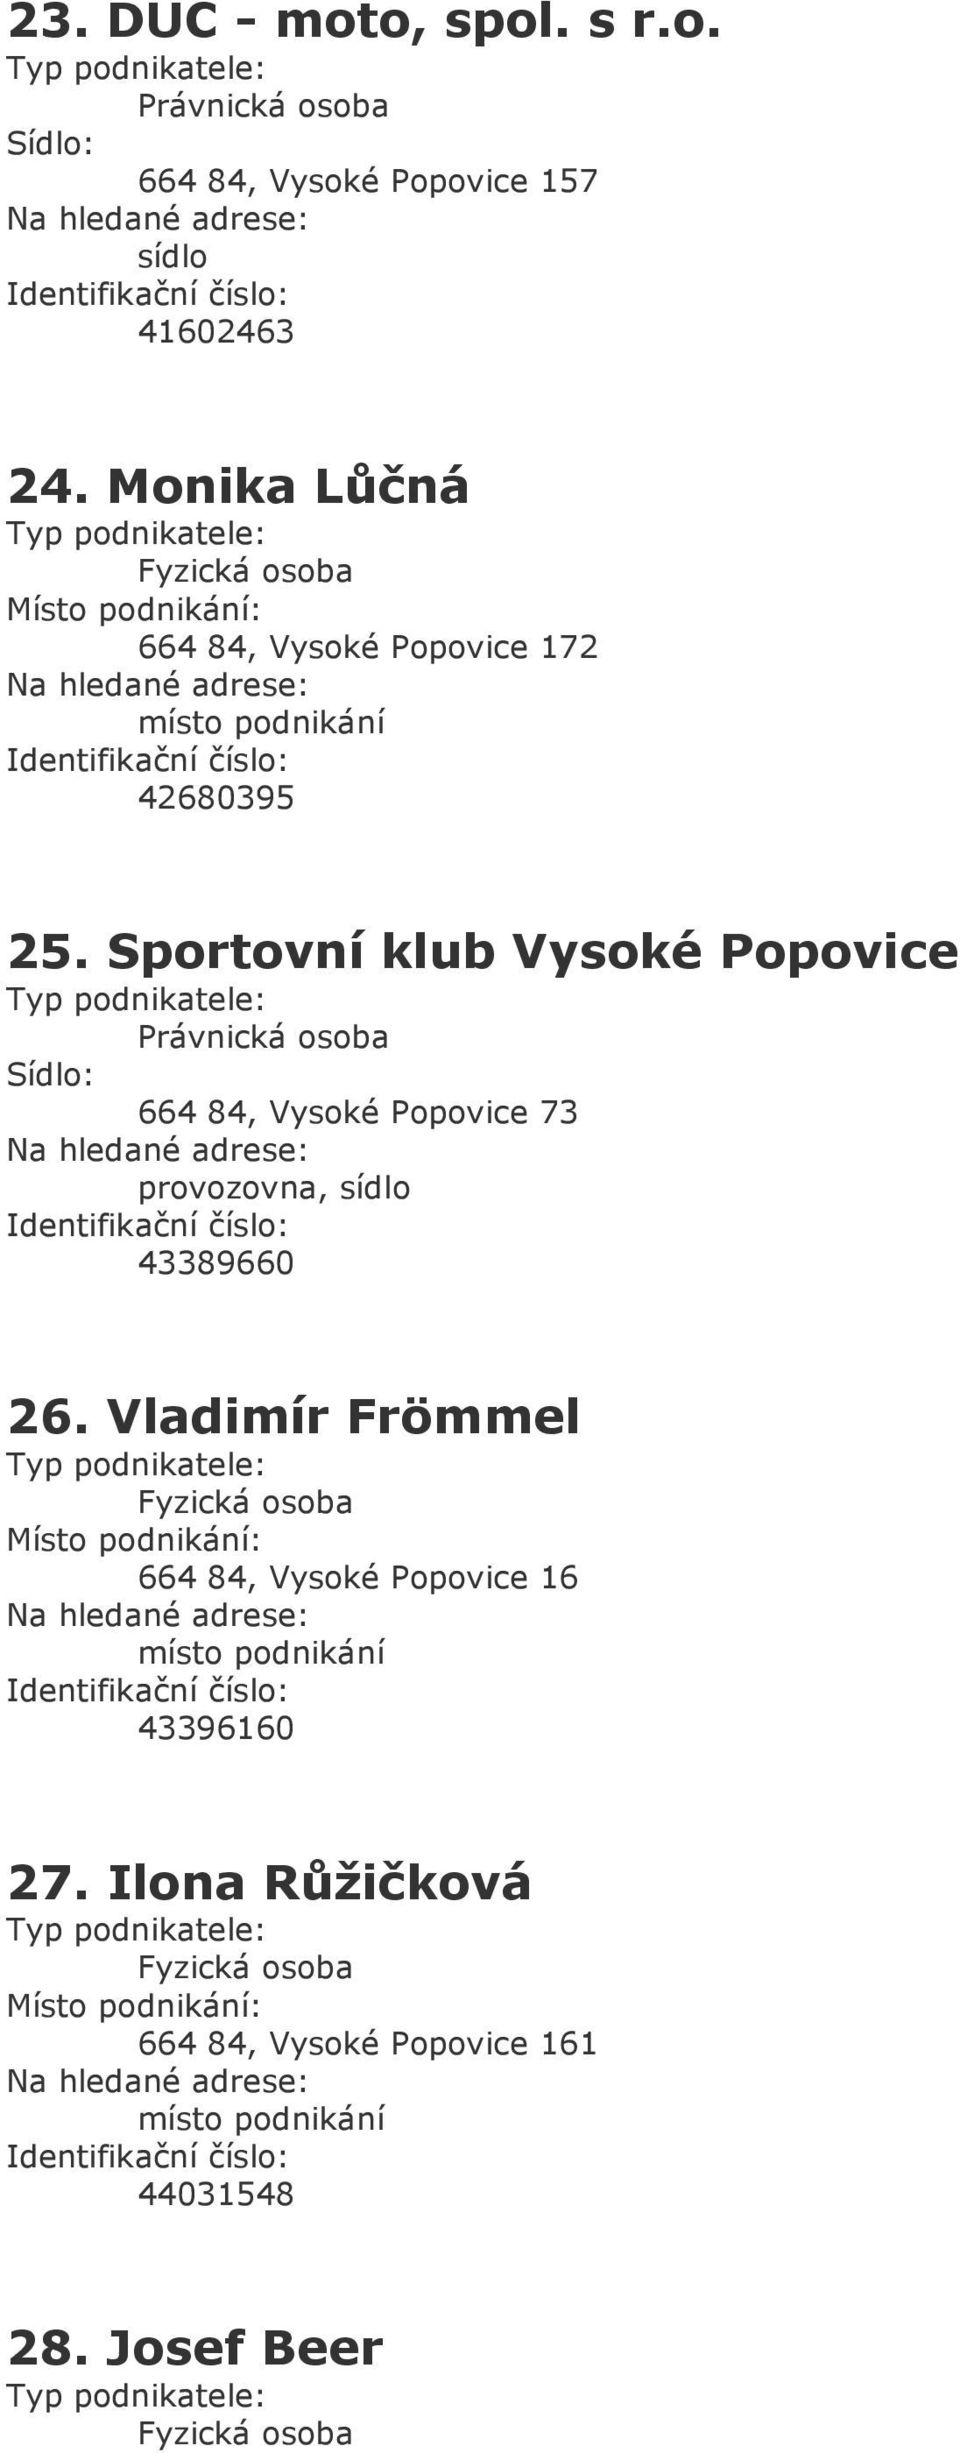 Sportovní klub Vysoké Popovice 664 84, Vysoké Popovice 73, 43389660 26.